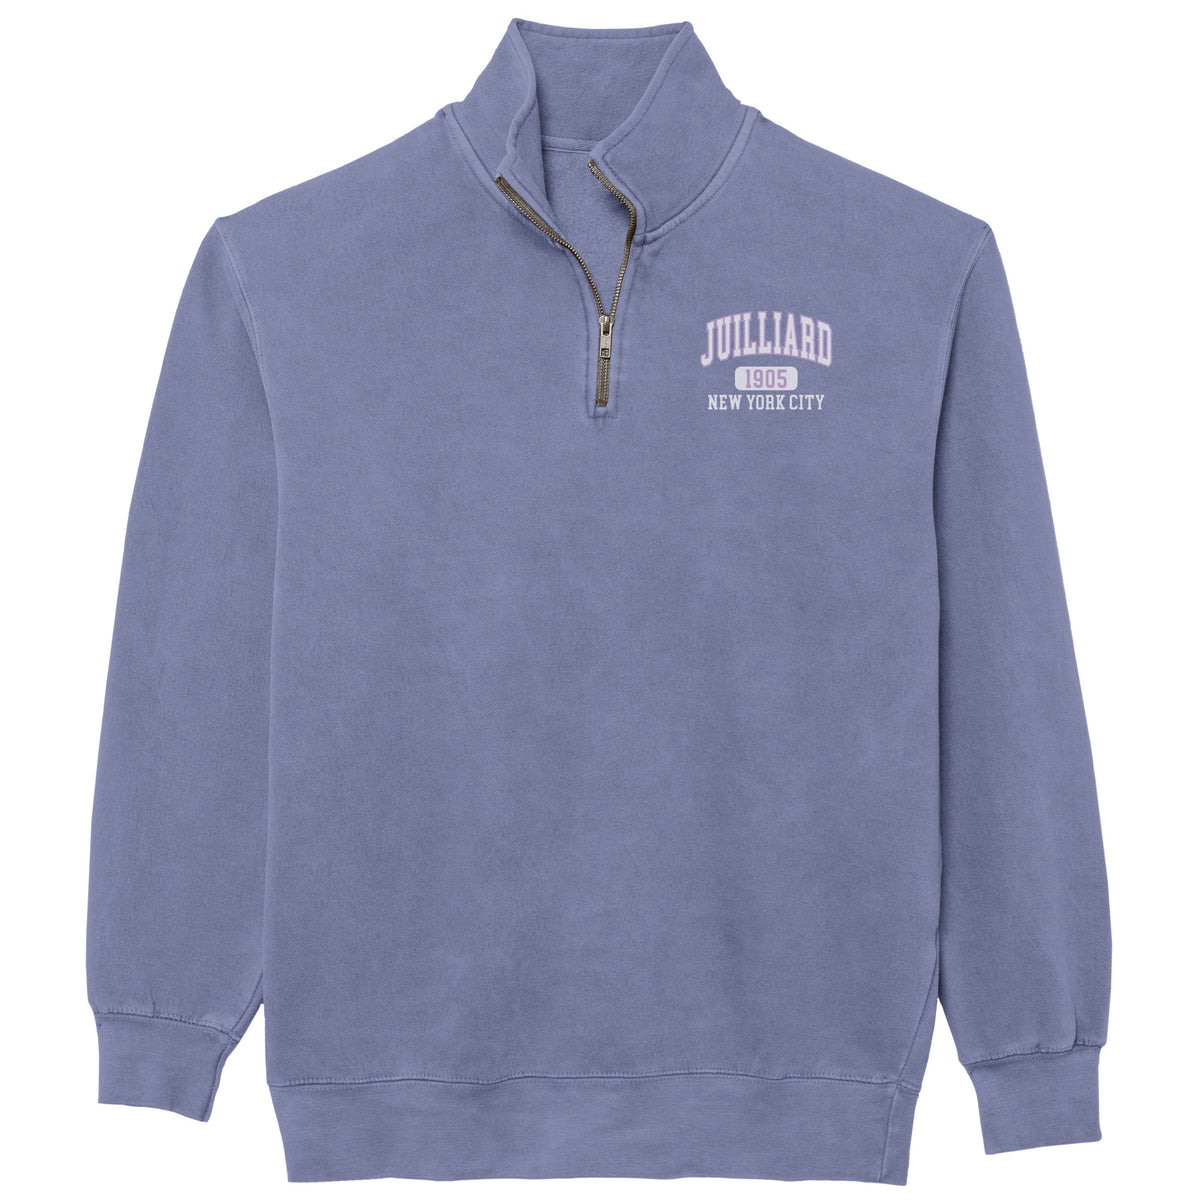 Sweatshirt: Pigment Dyed Quarter Zip / 1905 Juilliard logo